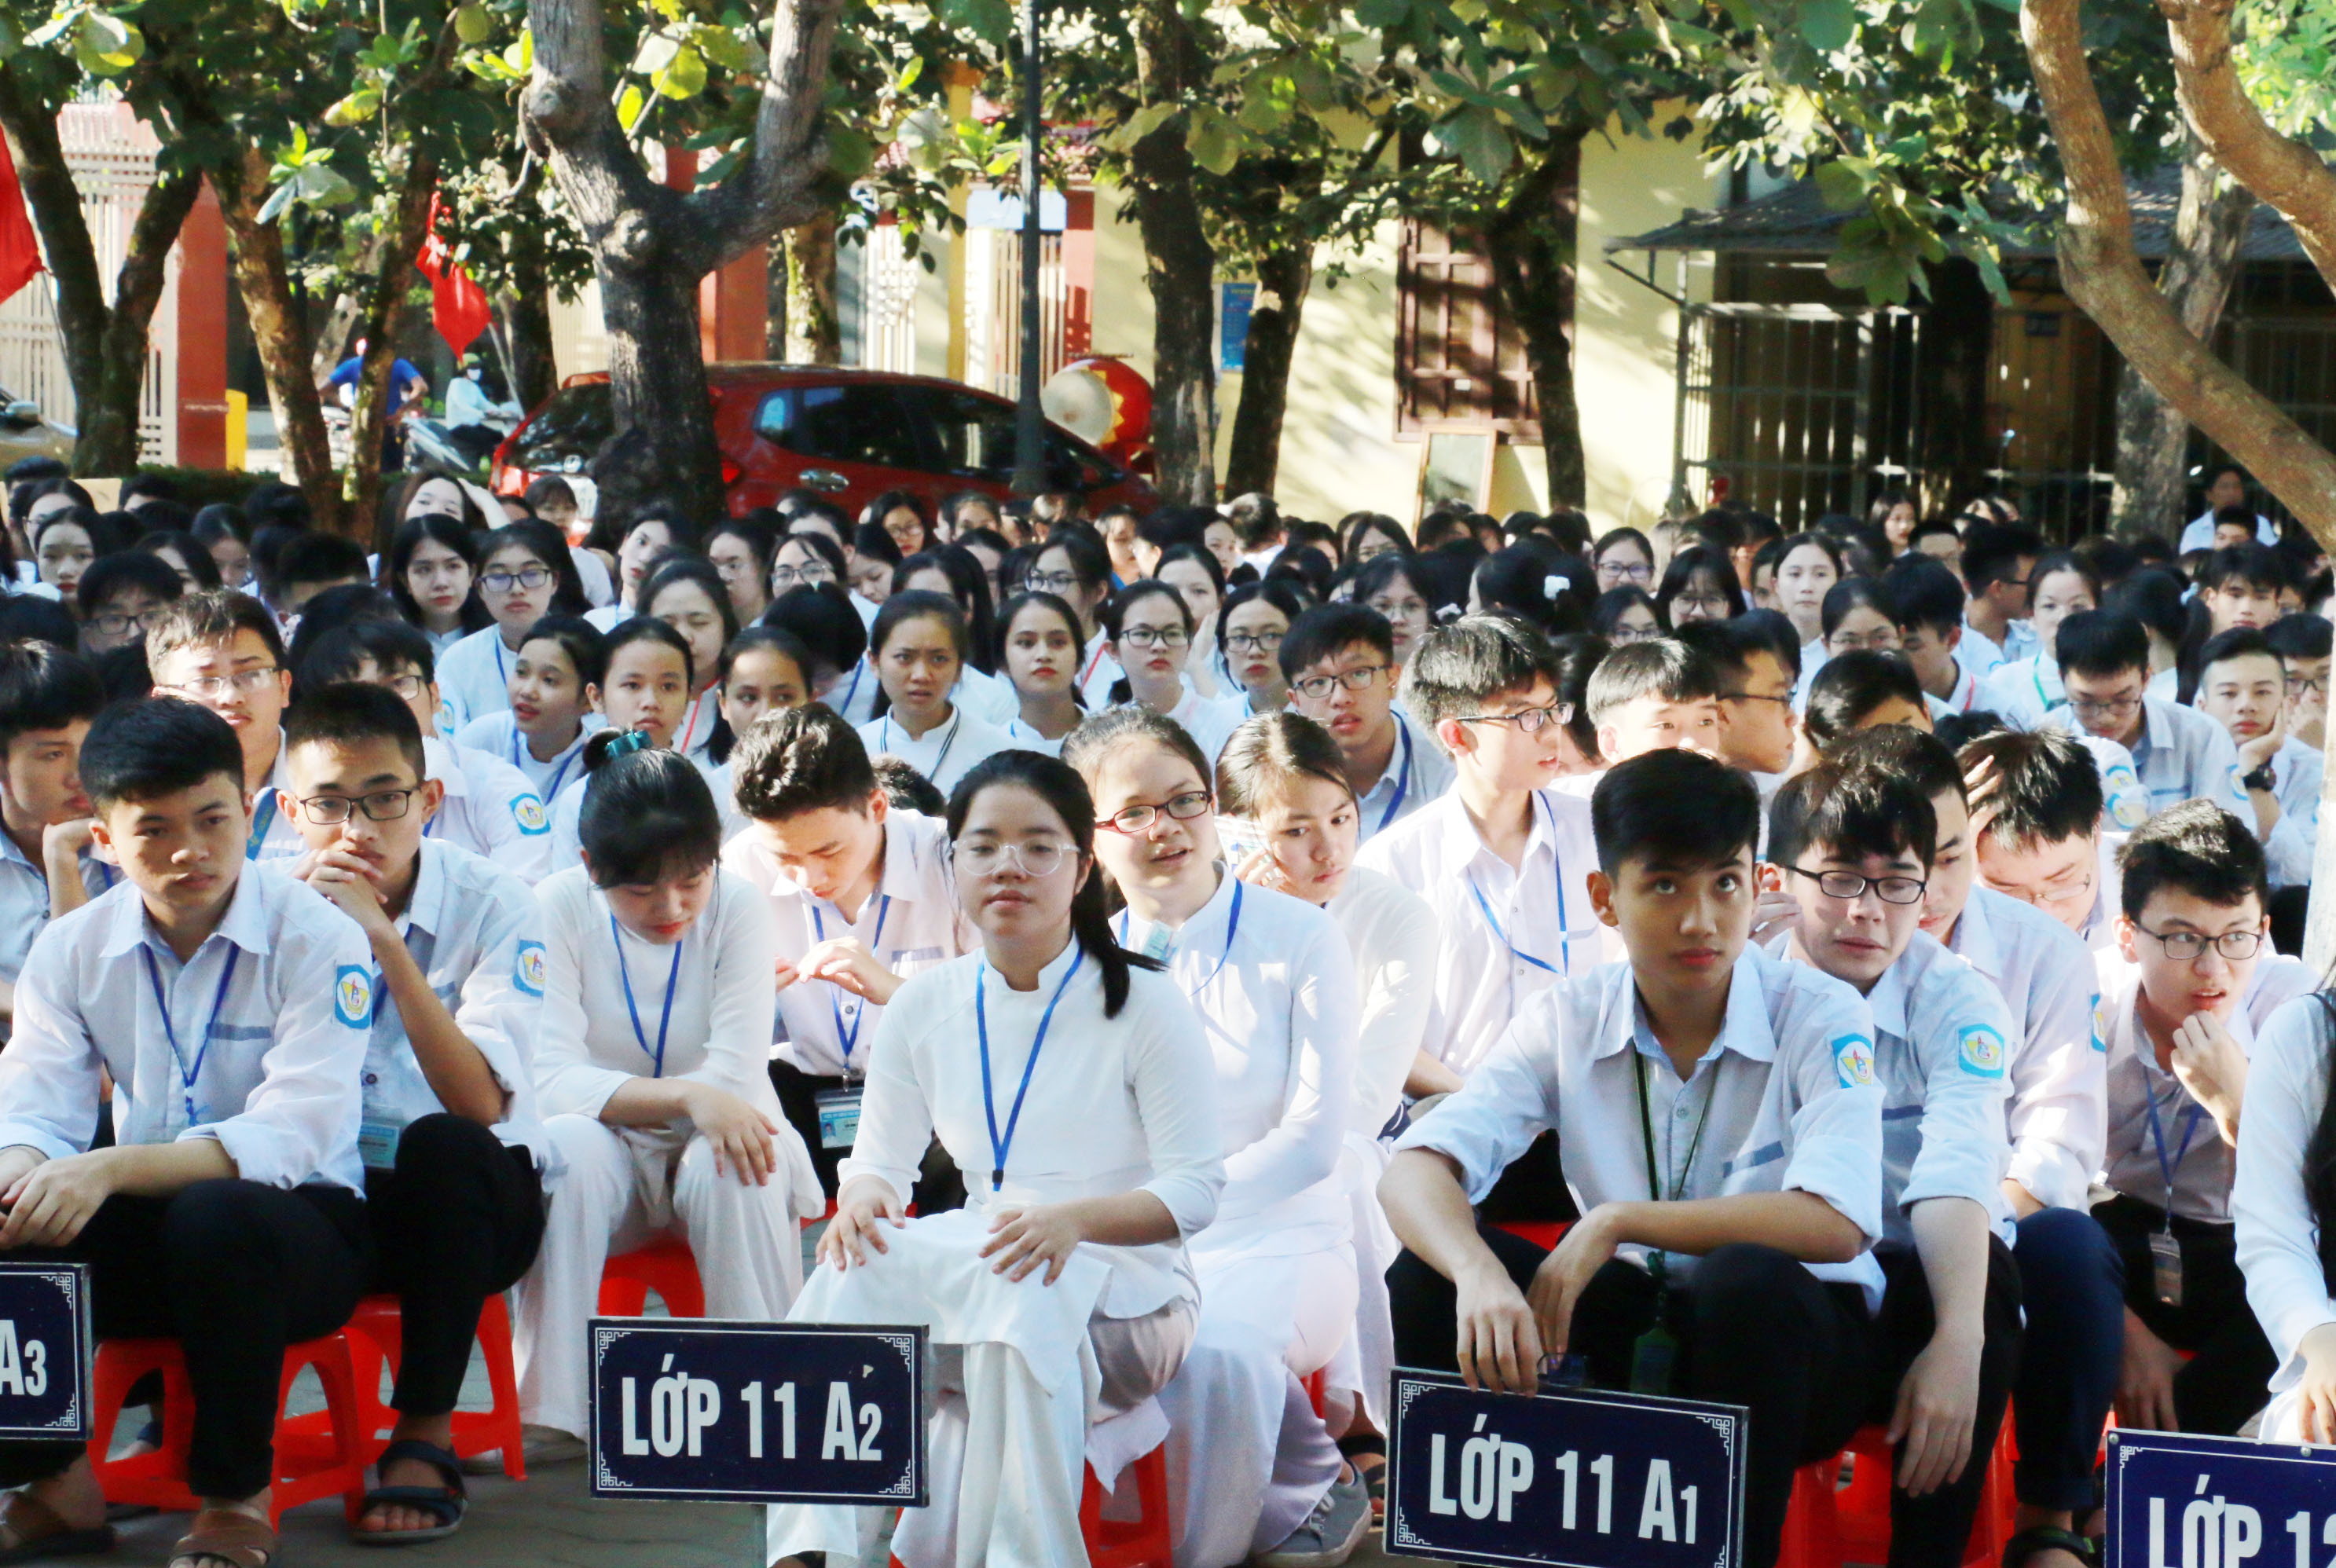 Trường THPT chuyên Phan Bội Châu là trường có chất lượng giáo dục hàng đầu của cả nước. Ảnh: Mỹ Hà